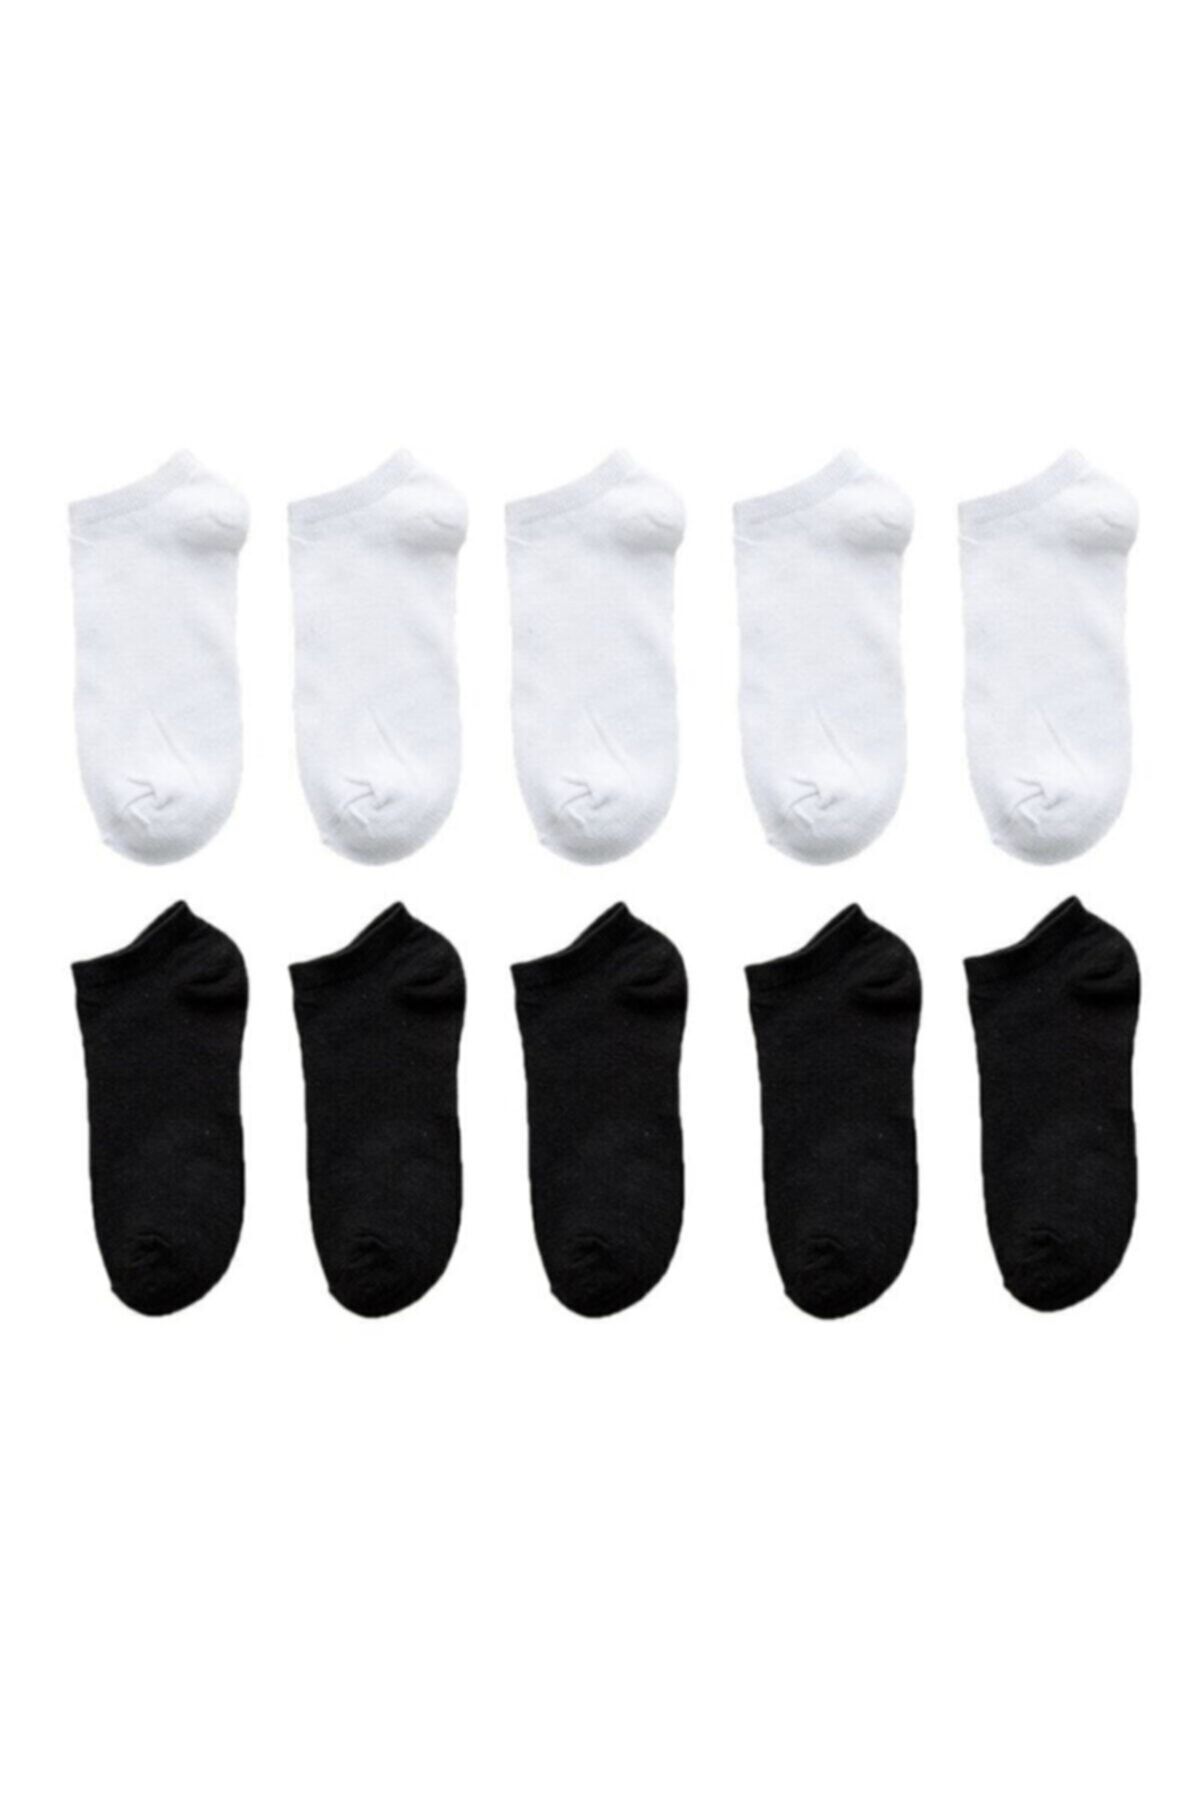 Atacık Çorap Kadın Siyah Beyaz Renk Koton Ekonomik Patik Çorap 10 Çift